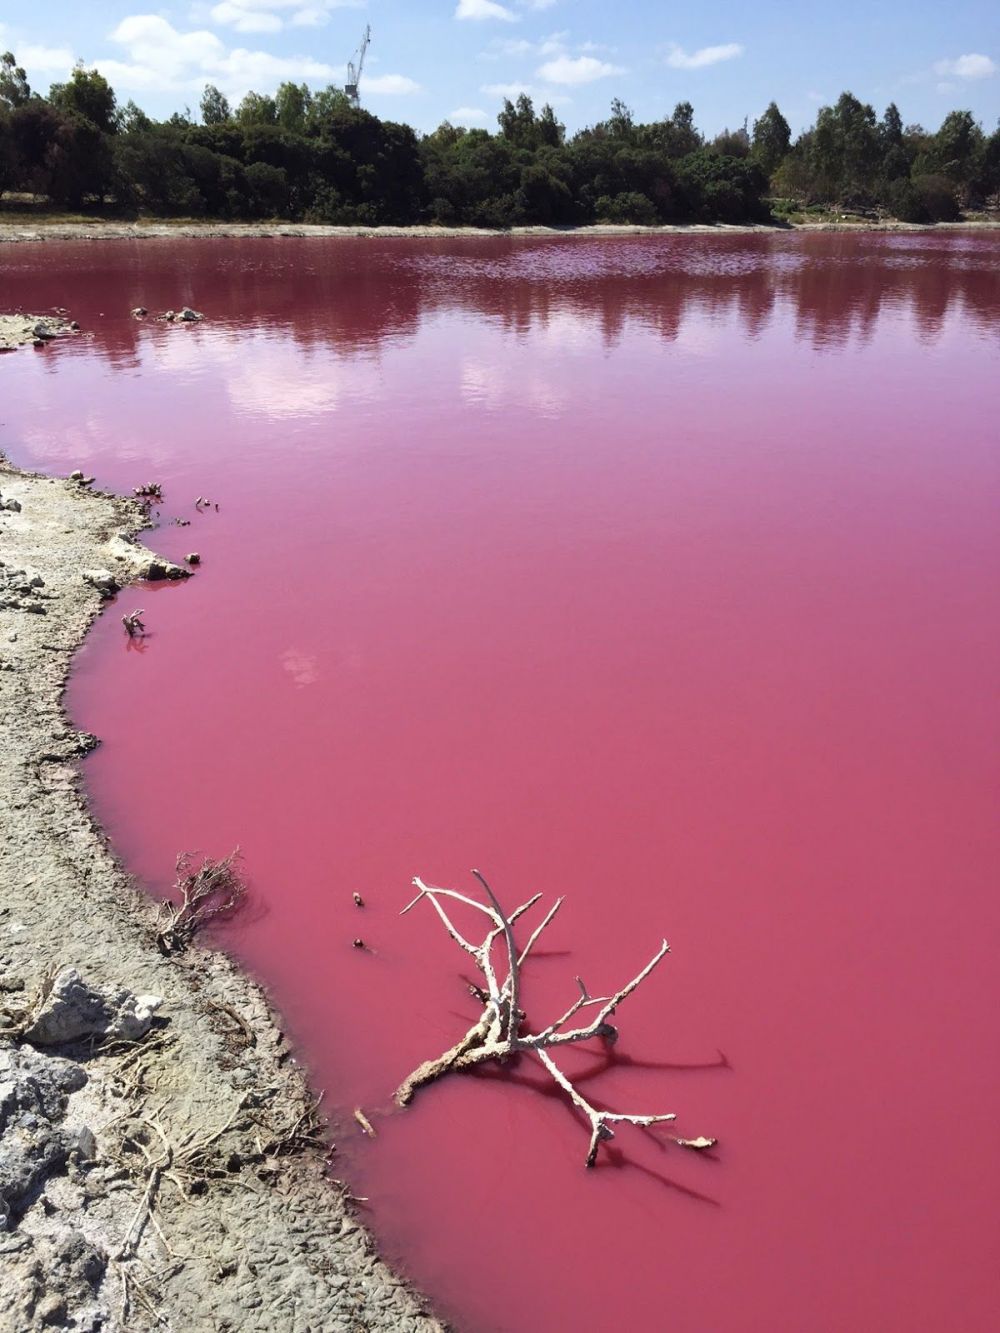 Imagini uimitoare: Motivul pentru care apa unui lac devine roz in fiecare an_4